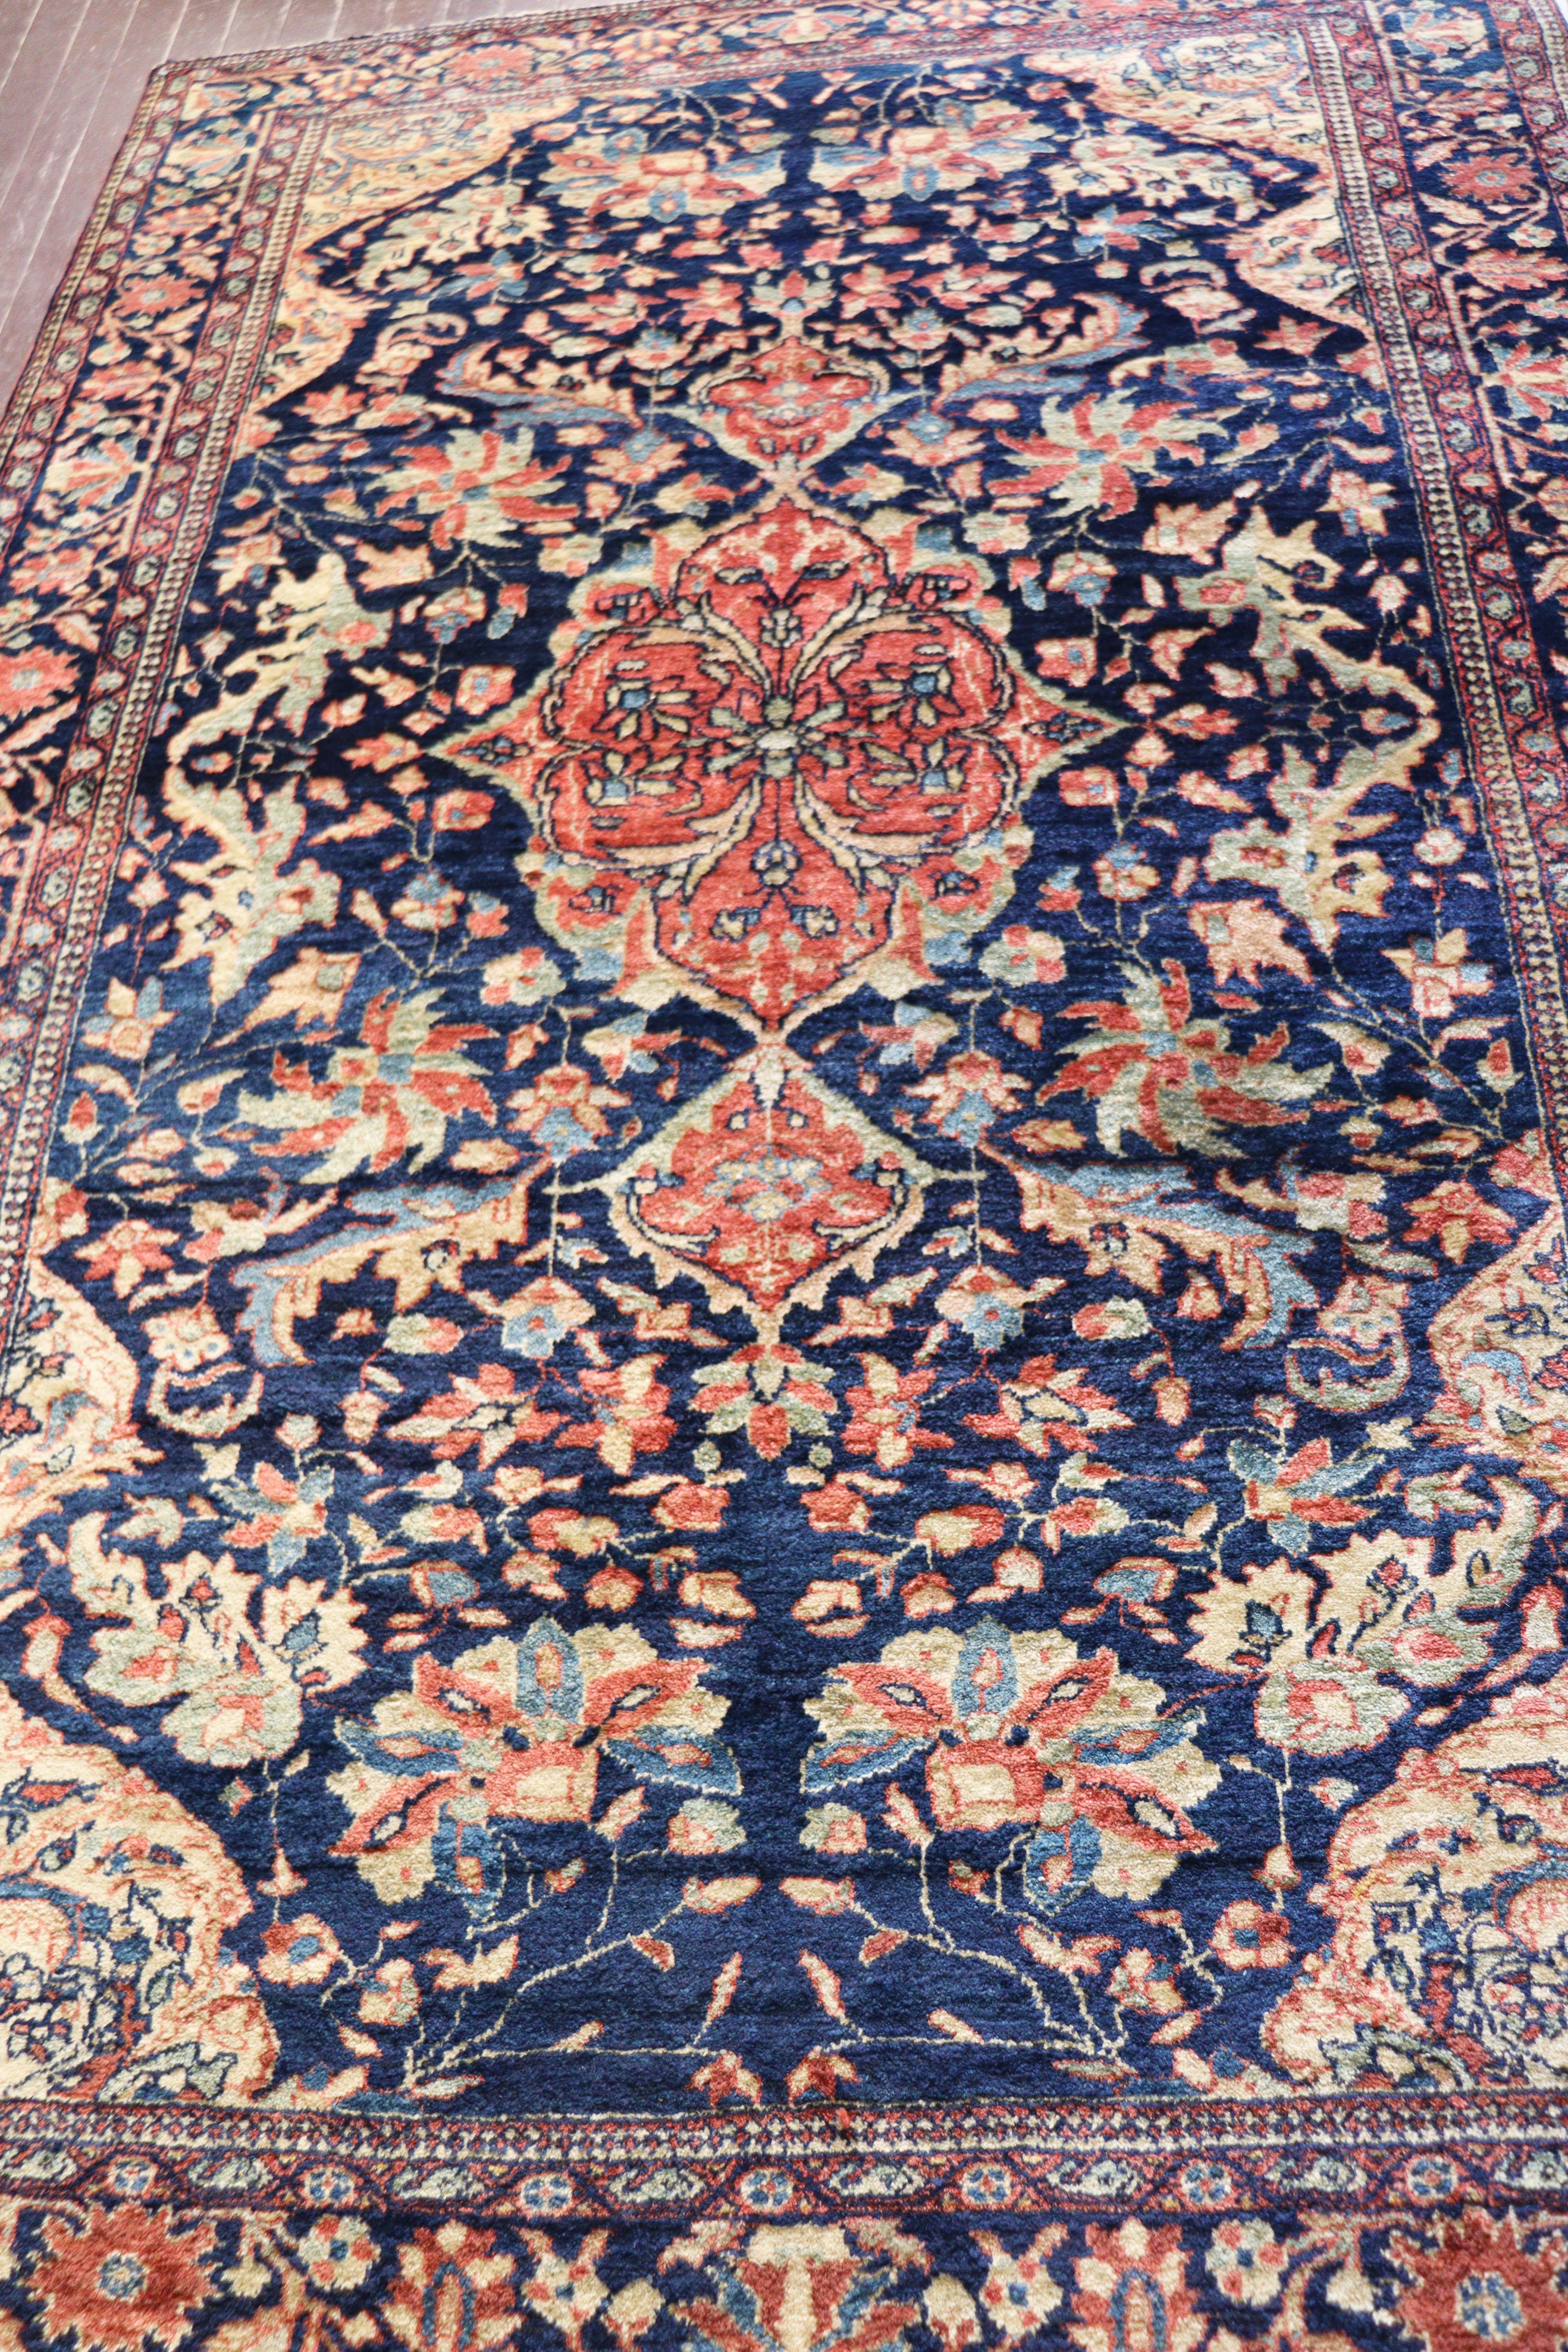  Paire de tapis persans anciens de type Feraghan Sarouk, inhabituels, 4'3